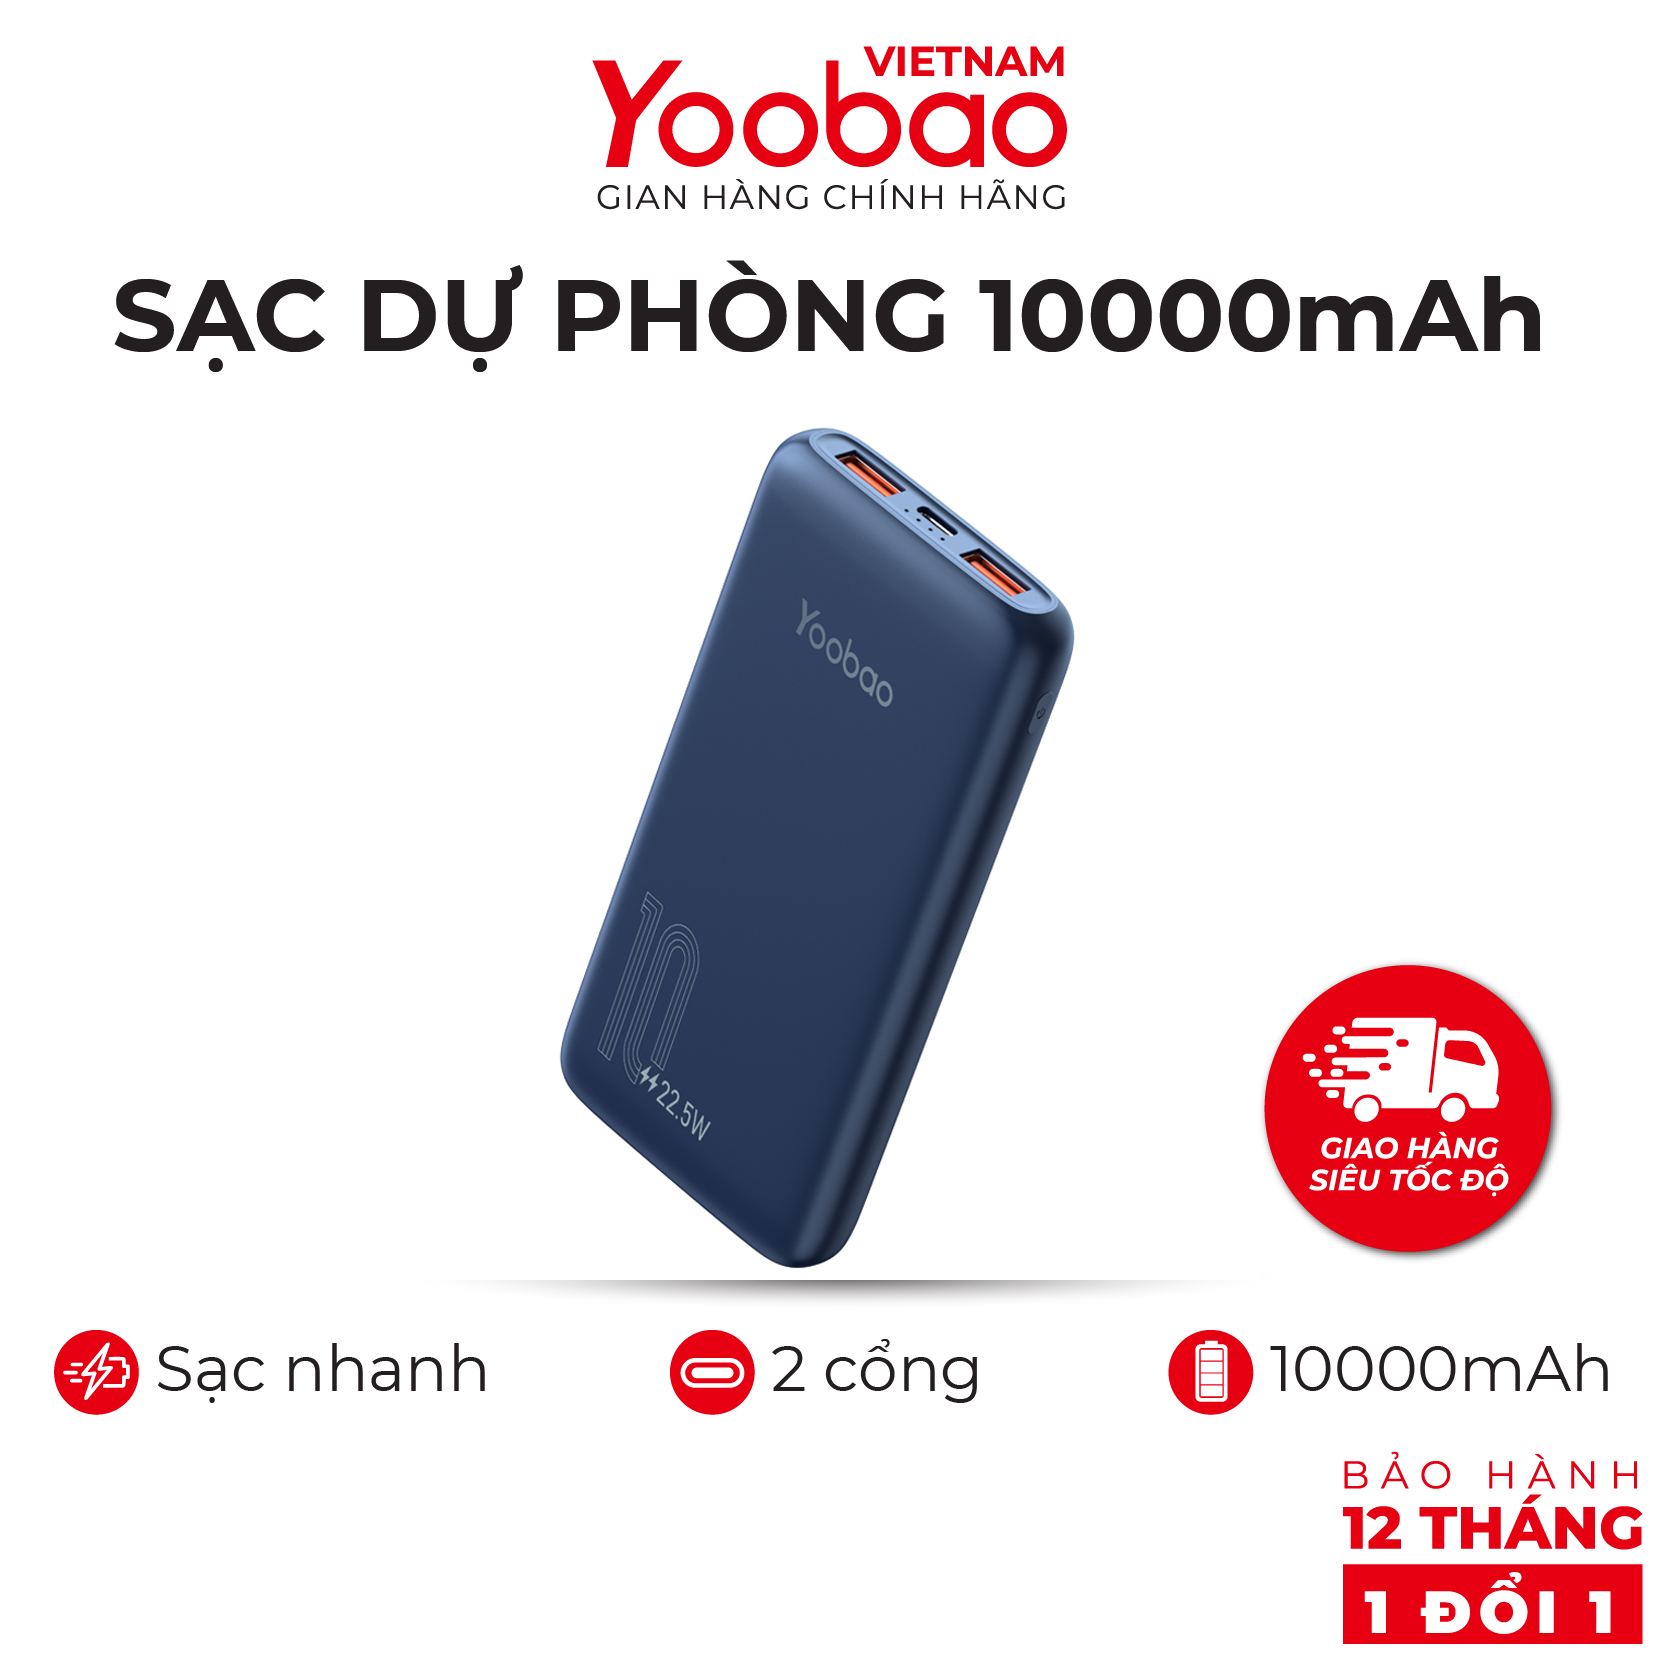 [HÀNG CHÍNH HÃNG] Sạc dự phòng 10000mAh D10Q Yoobao PD 20 -22,5W- Dùng cho Iphone 11,12, Huawei,... - Thiết kế hiện đại - Màu trắng